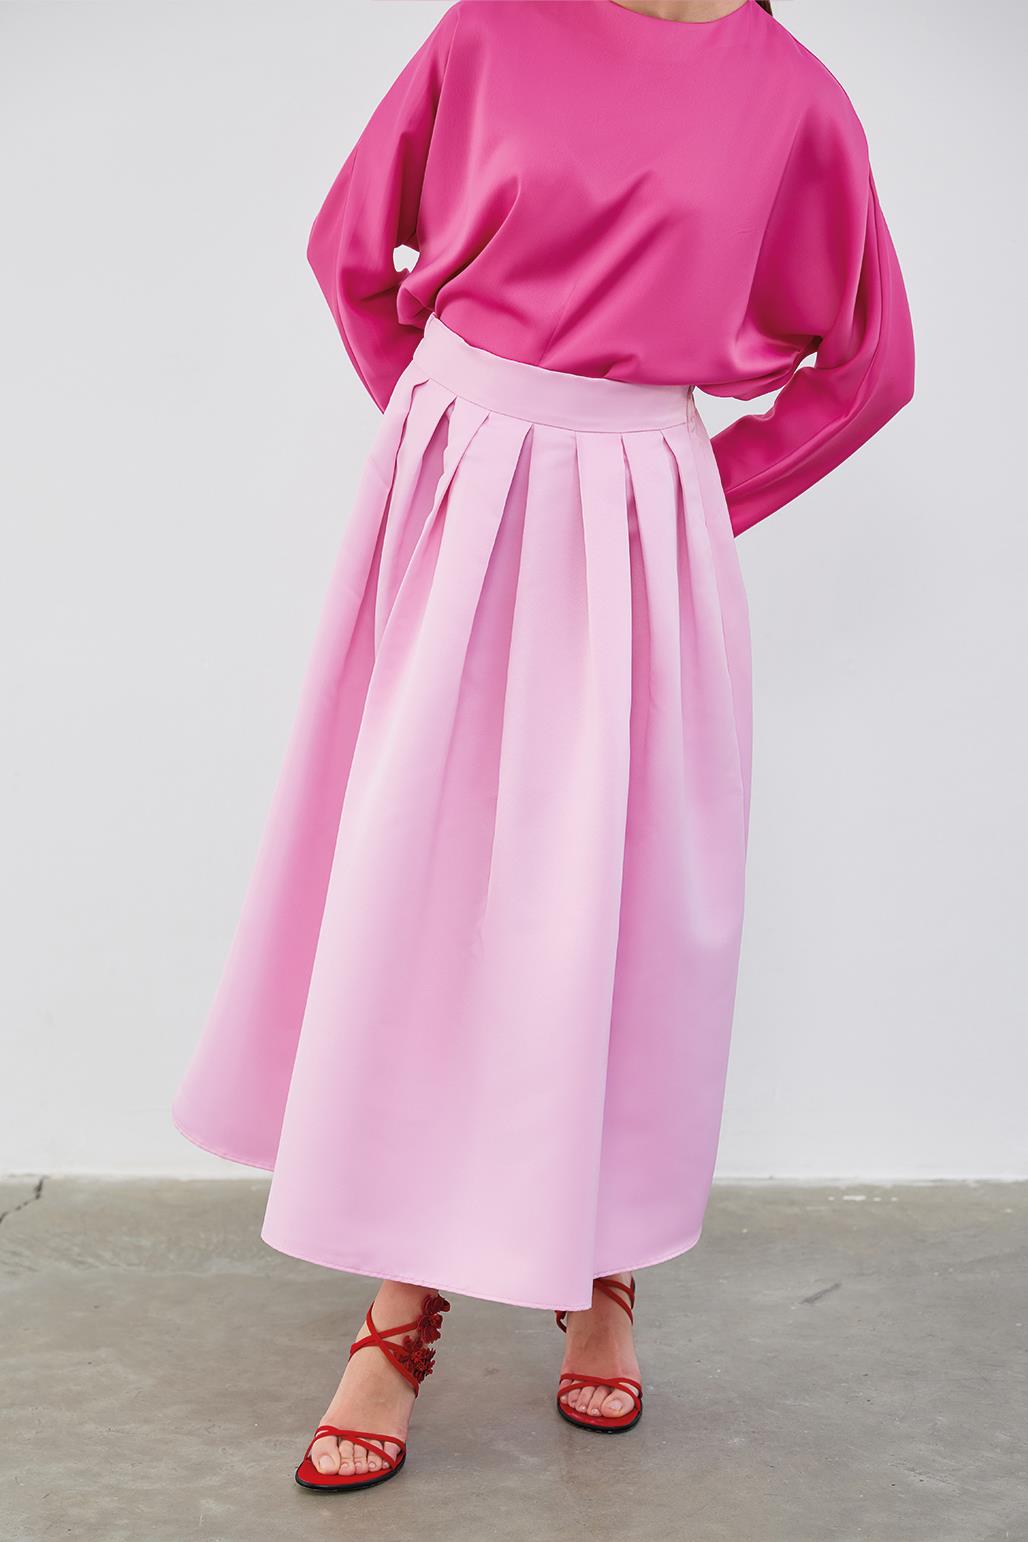 Ole Pleated High Waist Taffeta Skirt Pink